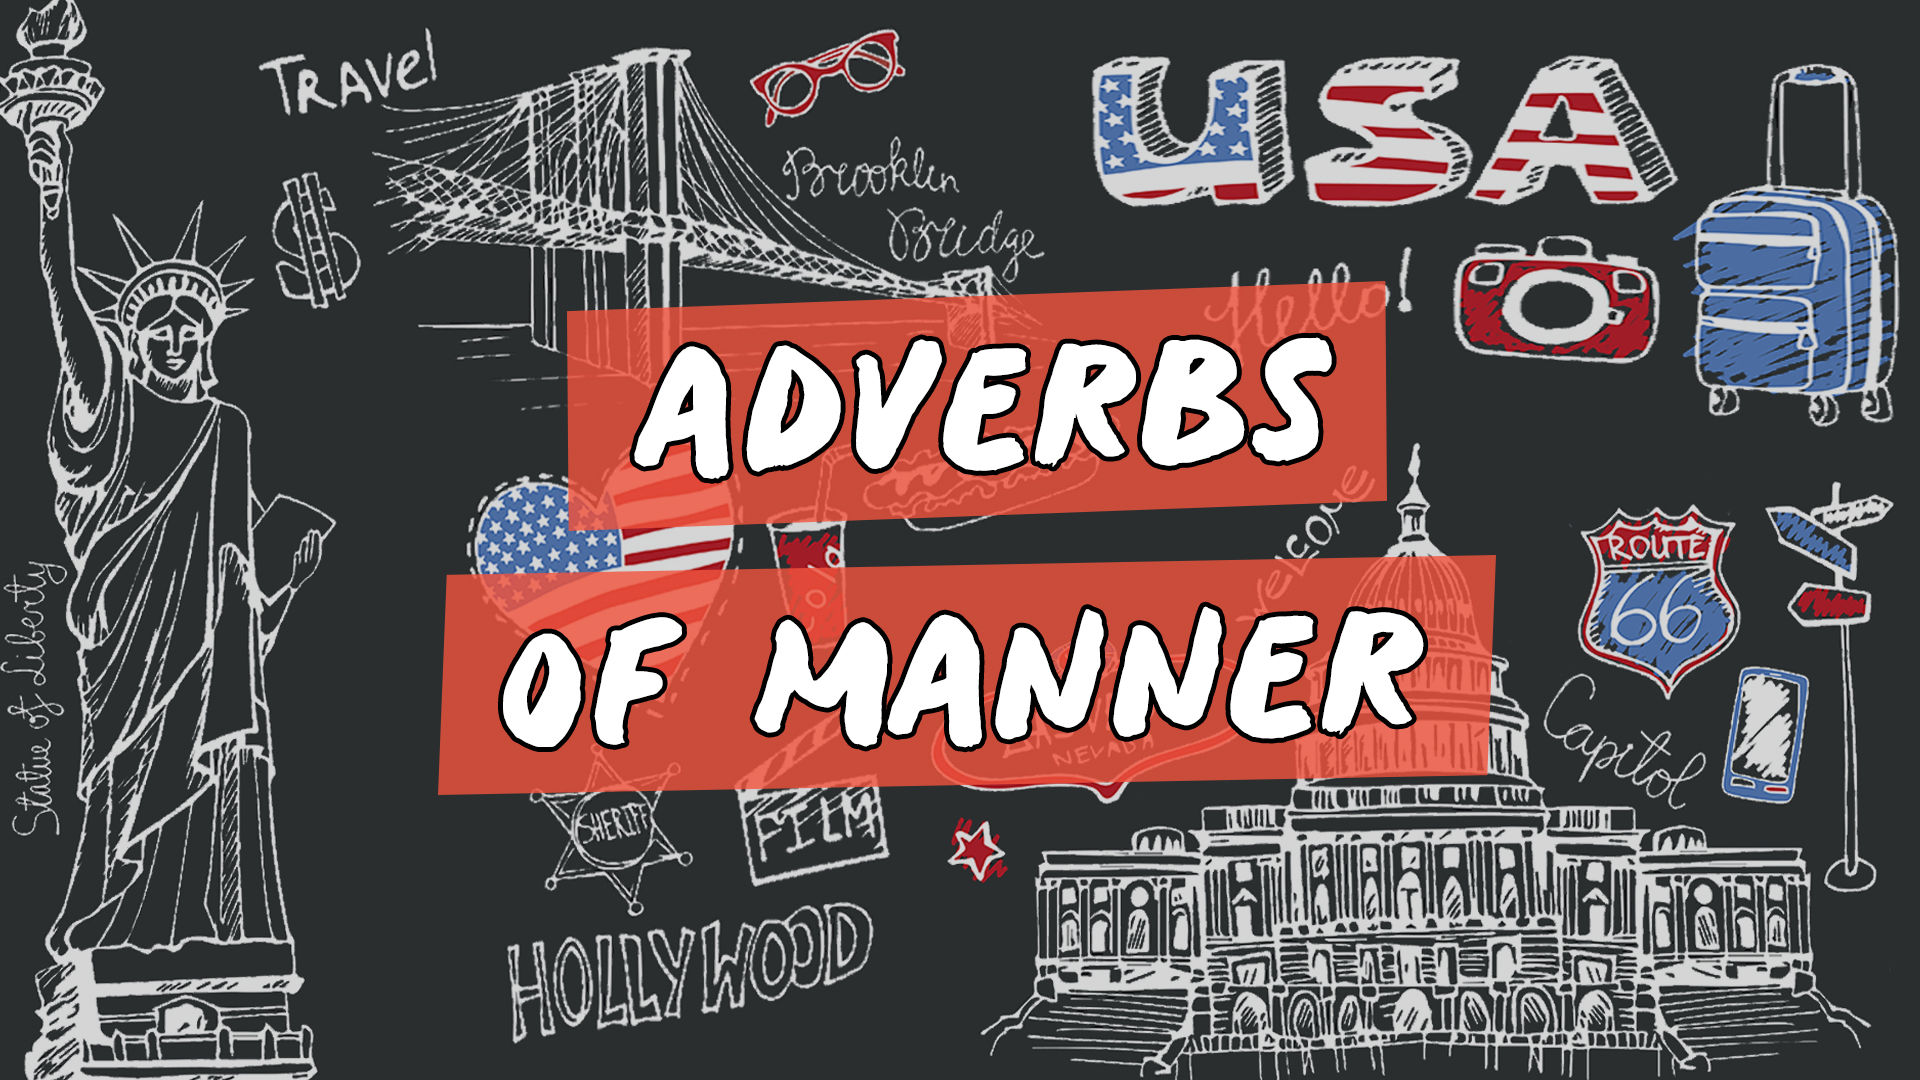 "Adverbs of Manner" escrito sobre ilustração de diversos ícones que representam os Estados Unidos